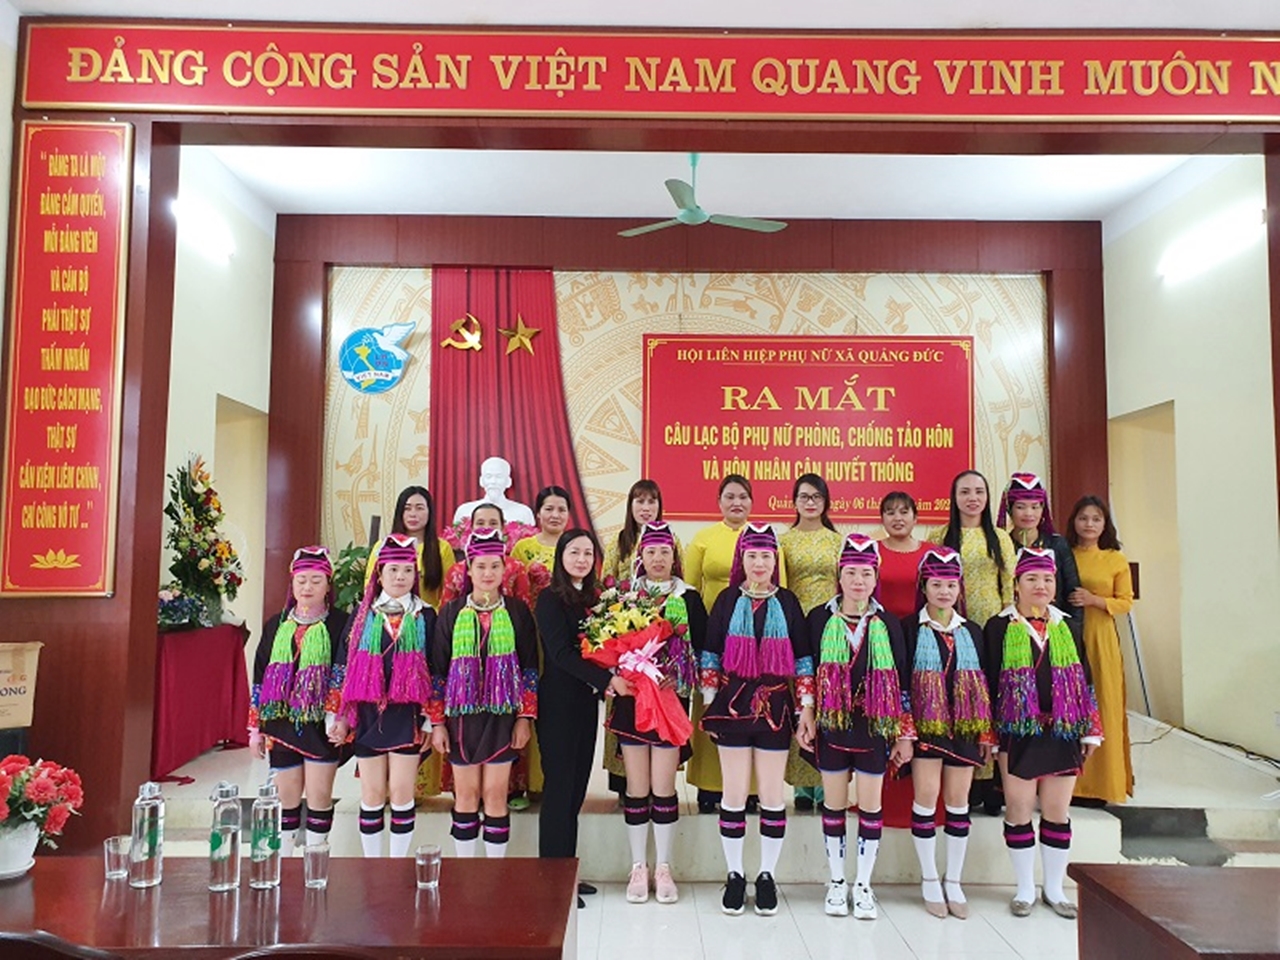 Hội LHPN xã Quảng Đức, huyện Hải Hà ra mắt CLB Phụ nữ phòng, chống tảo hôn và hôn nhân cận huyết thống. Ảnh: Trần Trinh (Trung tâm TT-VH Hải Hà